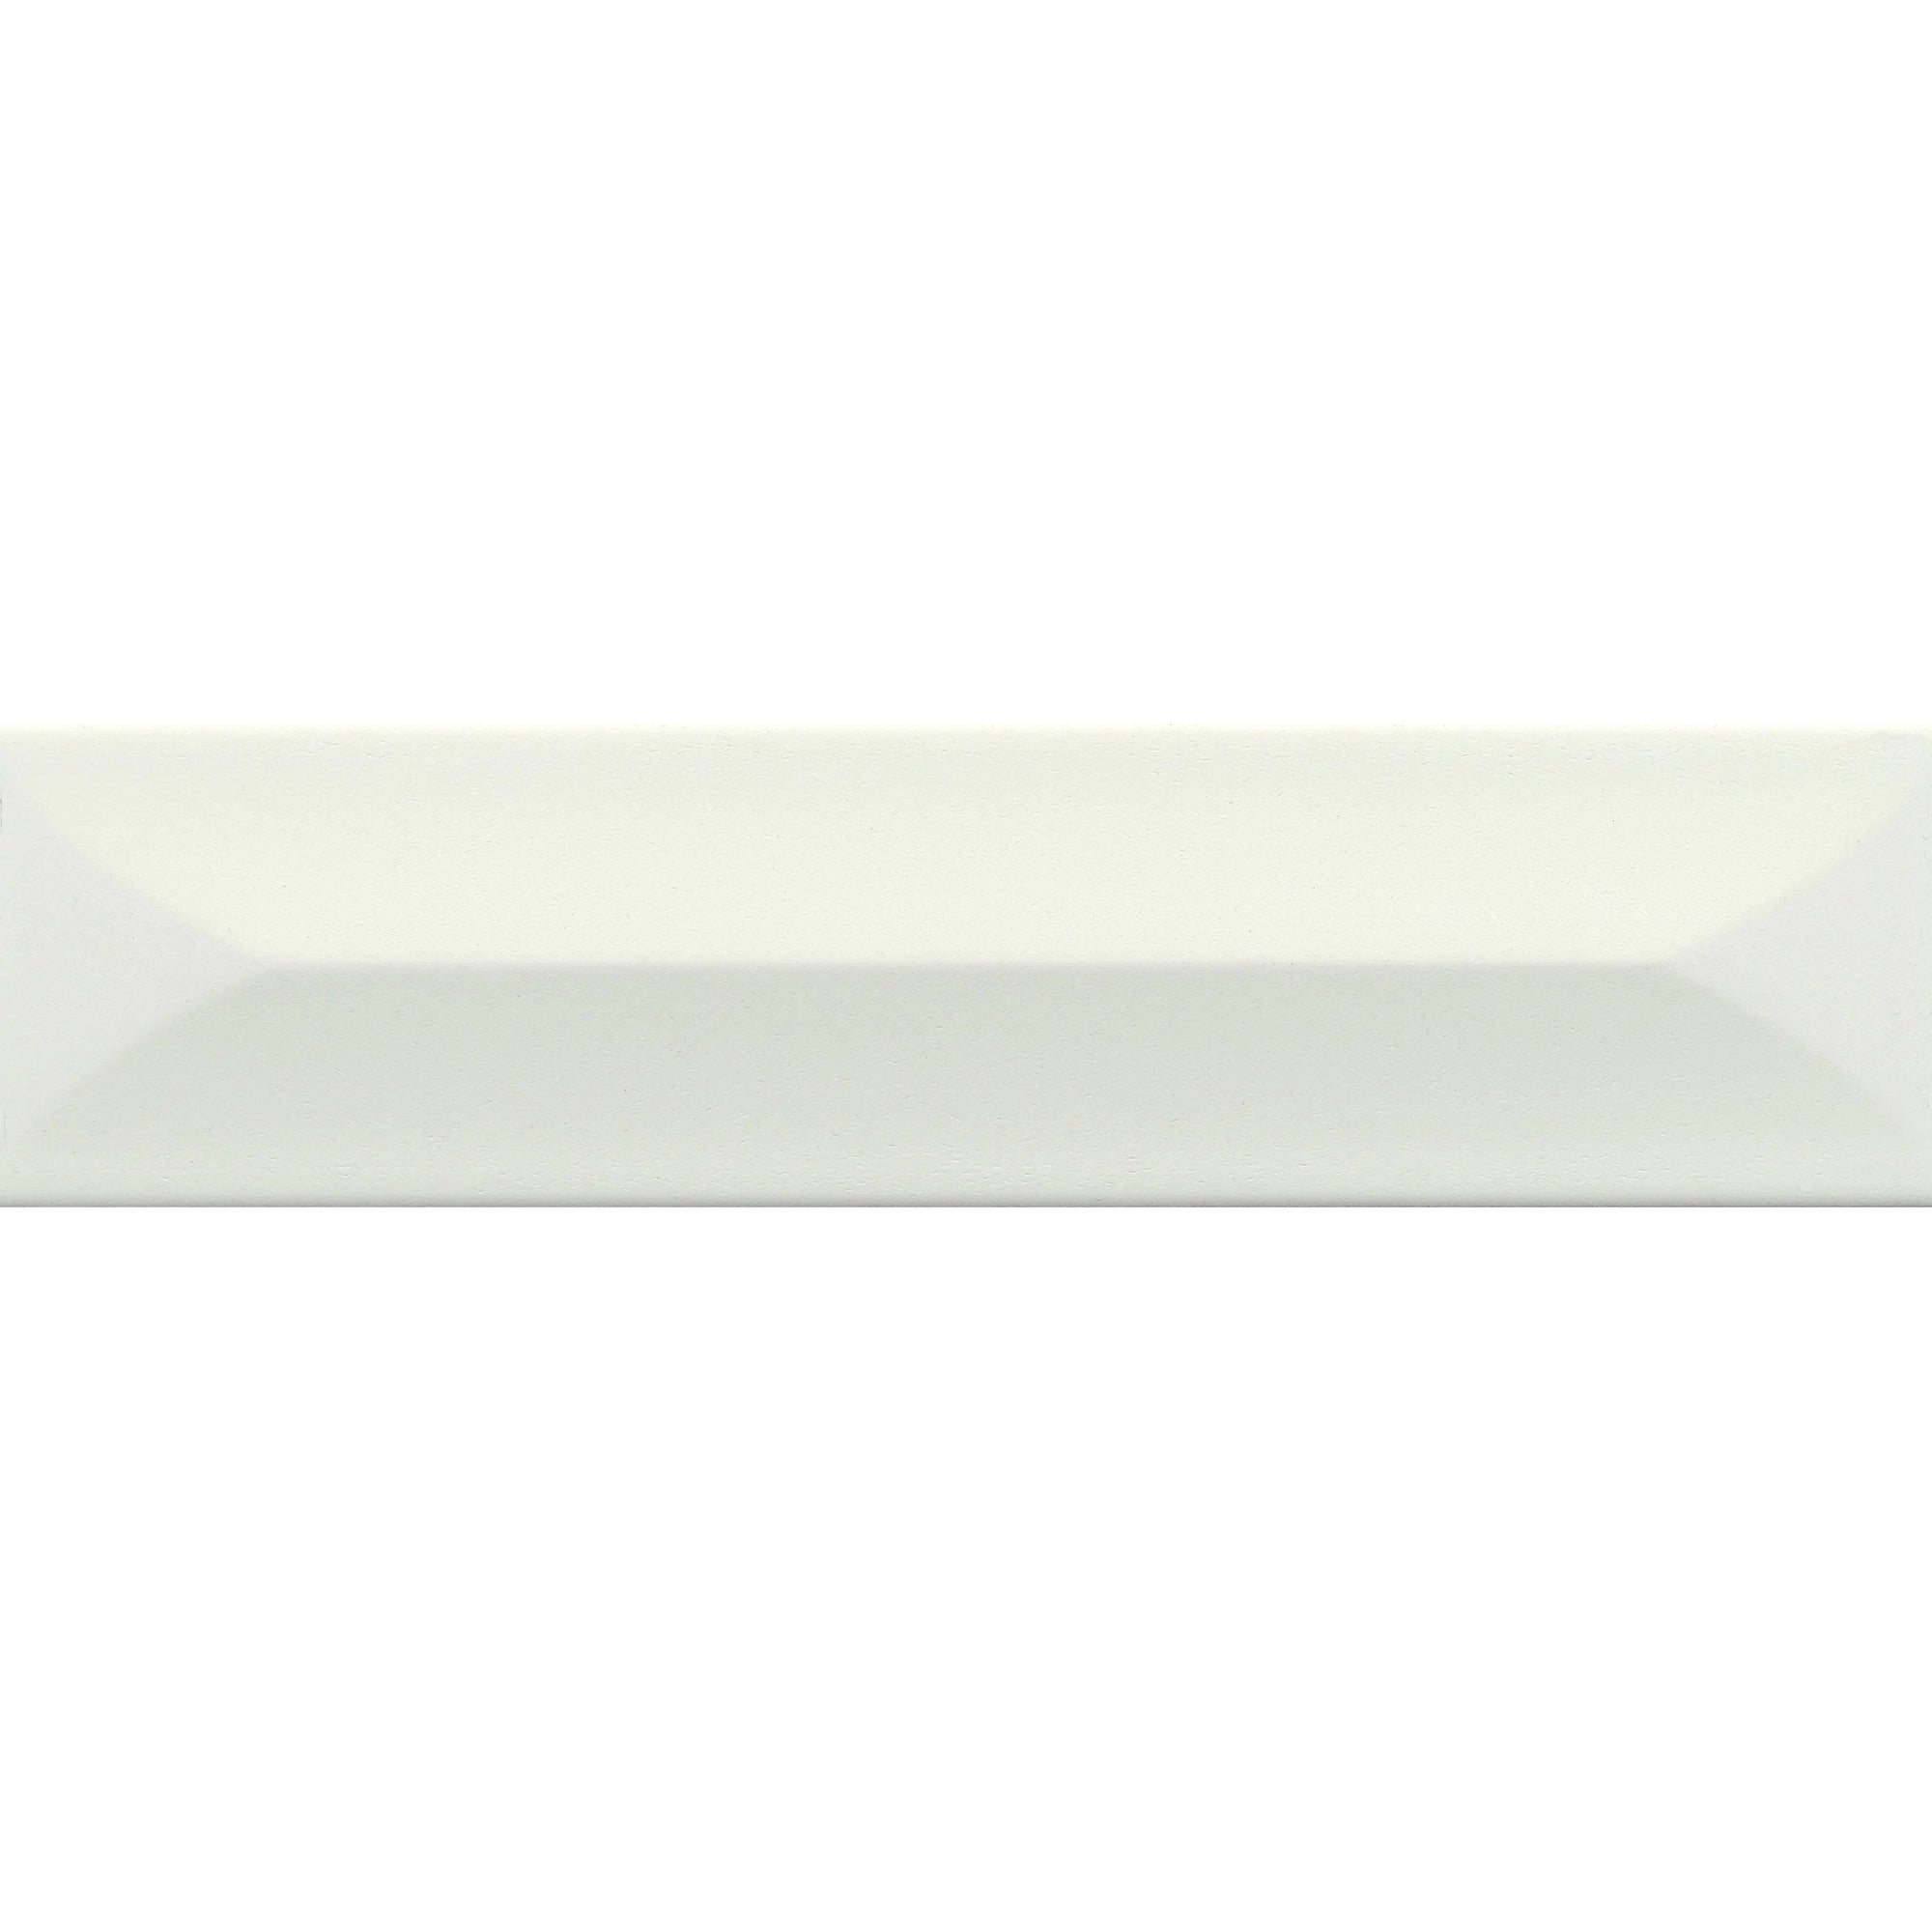 Emser Tile - Estasi 3 in. x 12 in. Glazed Ceramic Tile - White Peak Matte